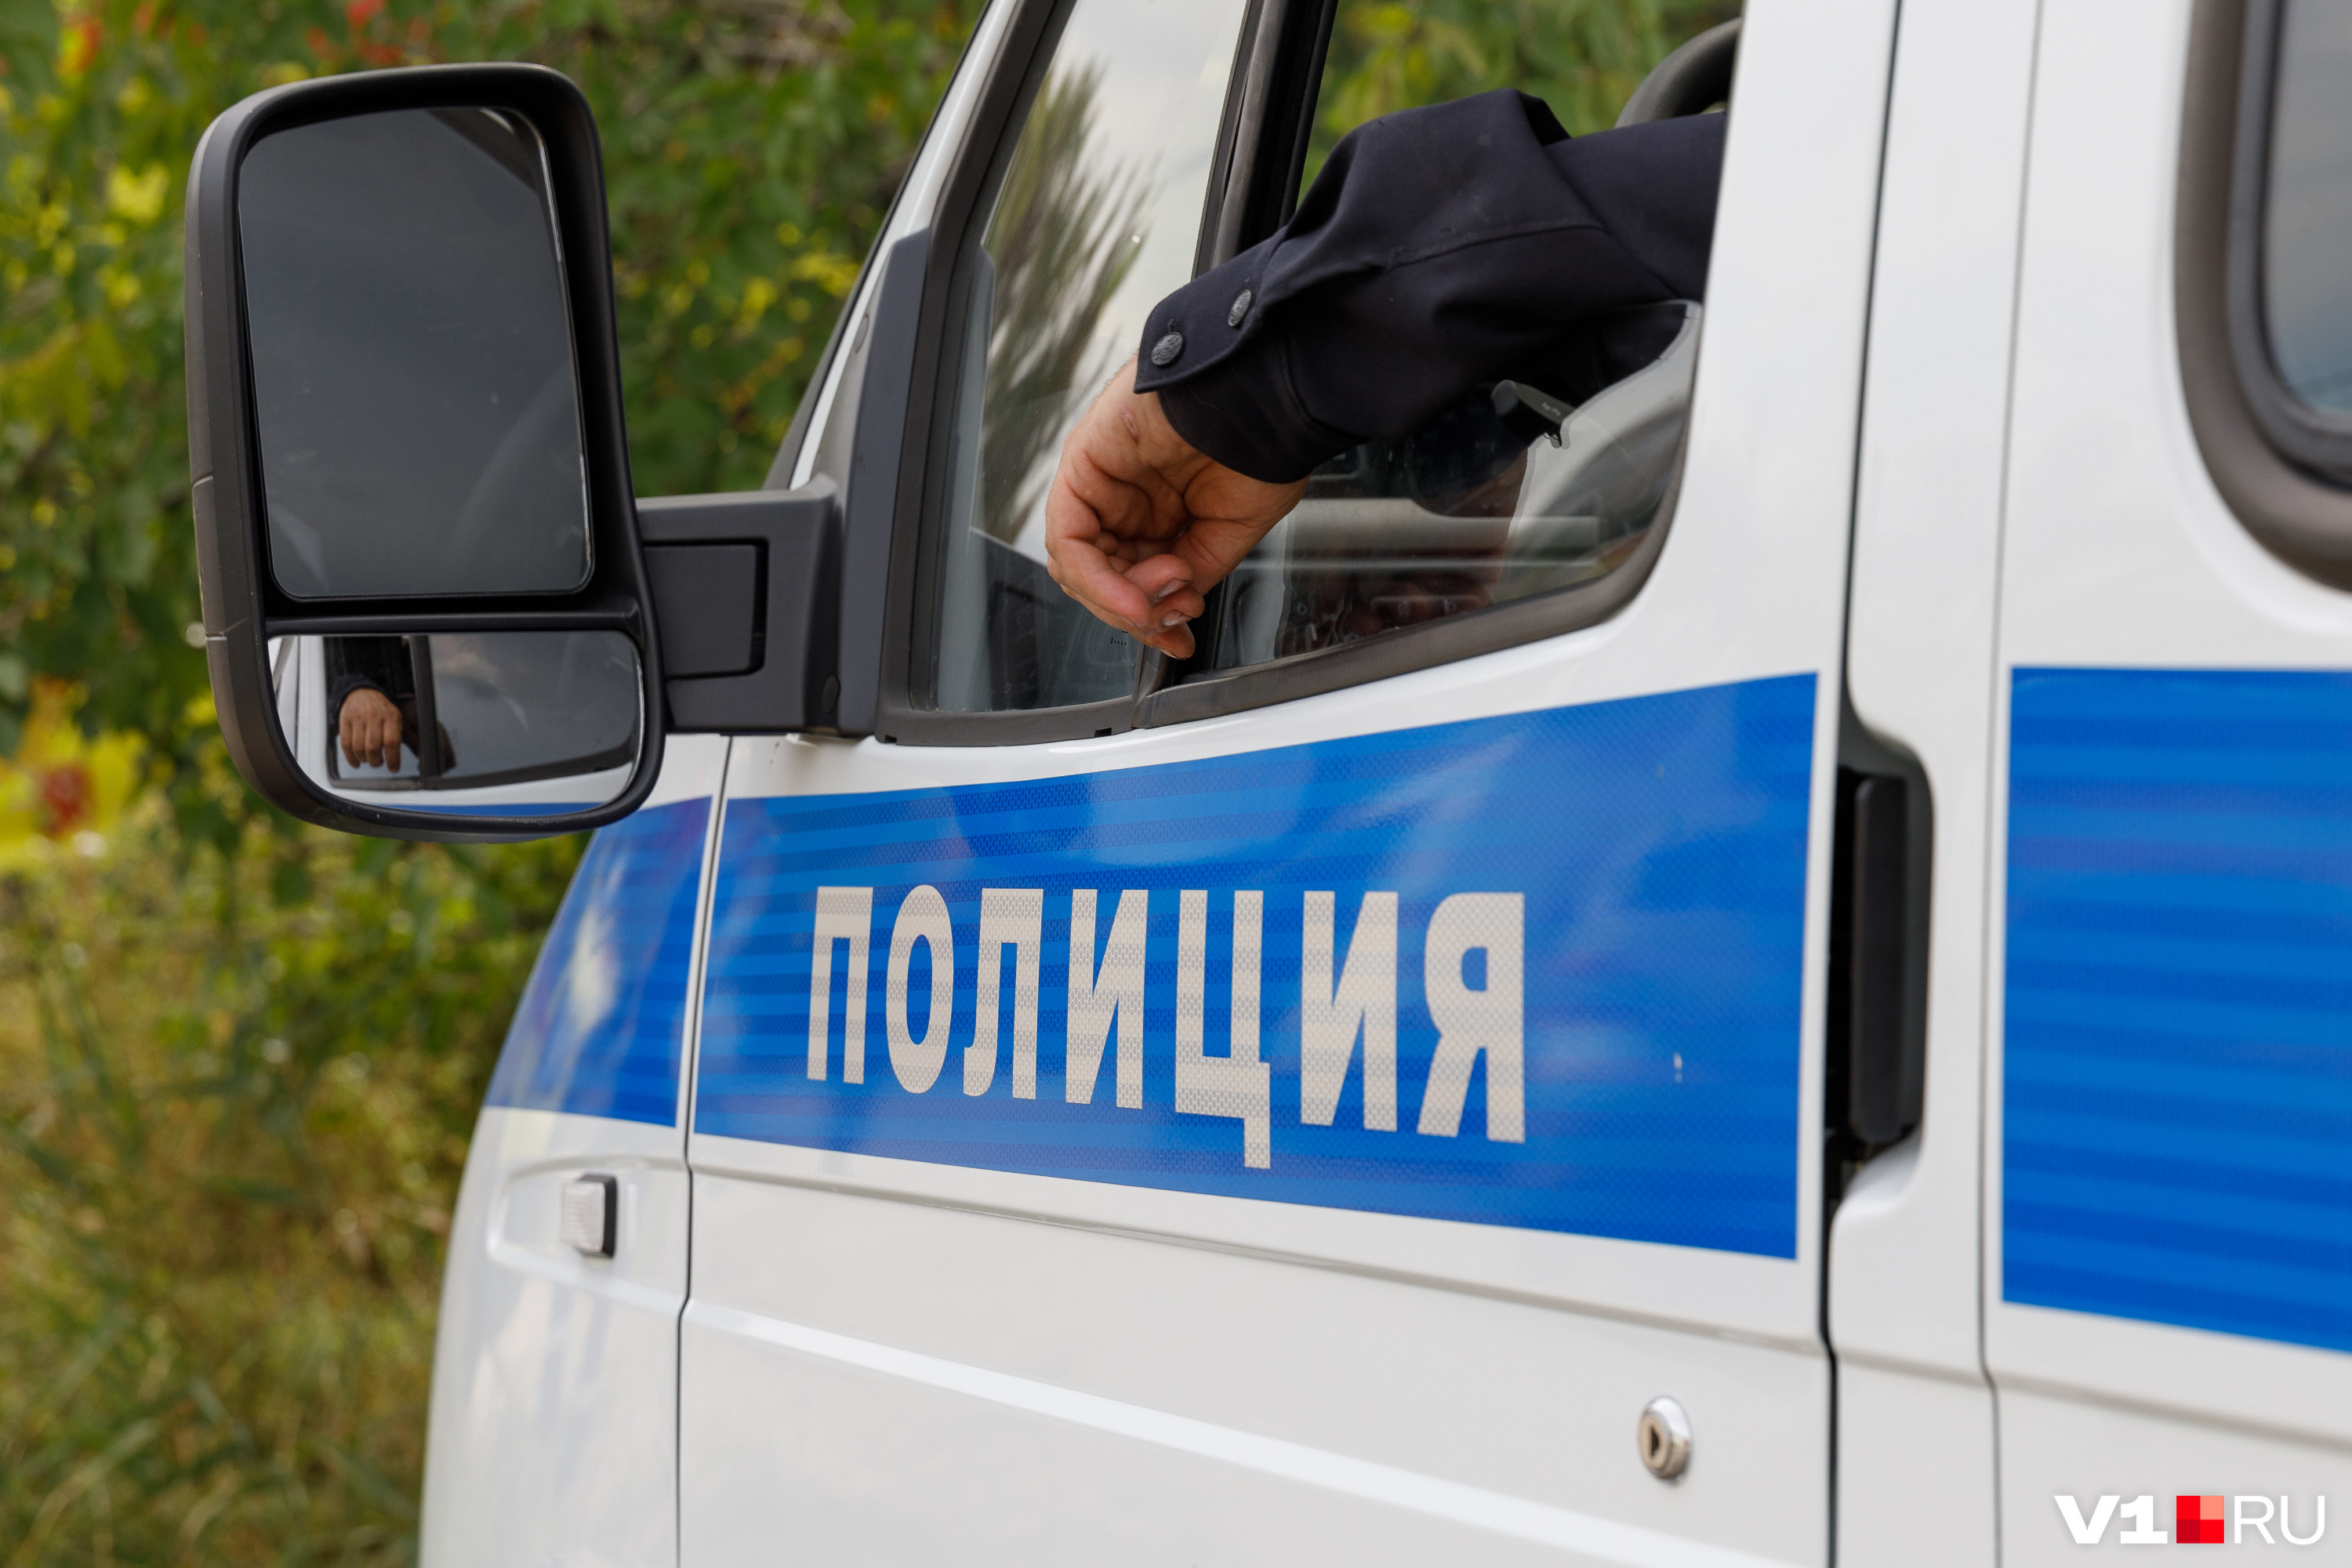 Ориентировку на Дмитрия Ветрова перепроверили полицейские не одного десятка регионов РФ